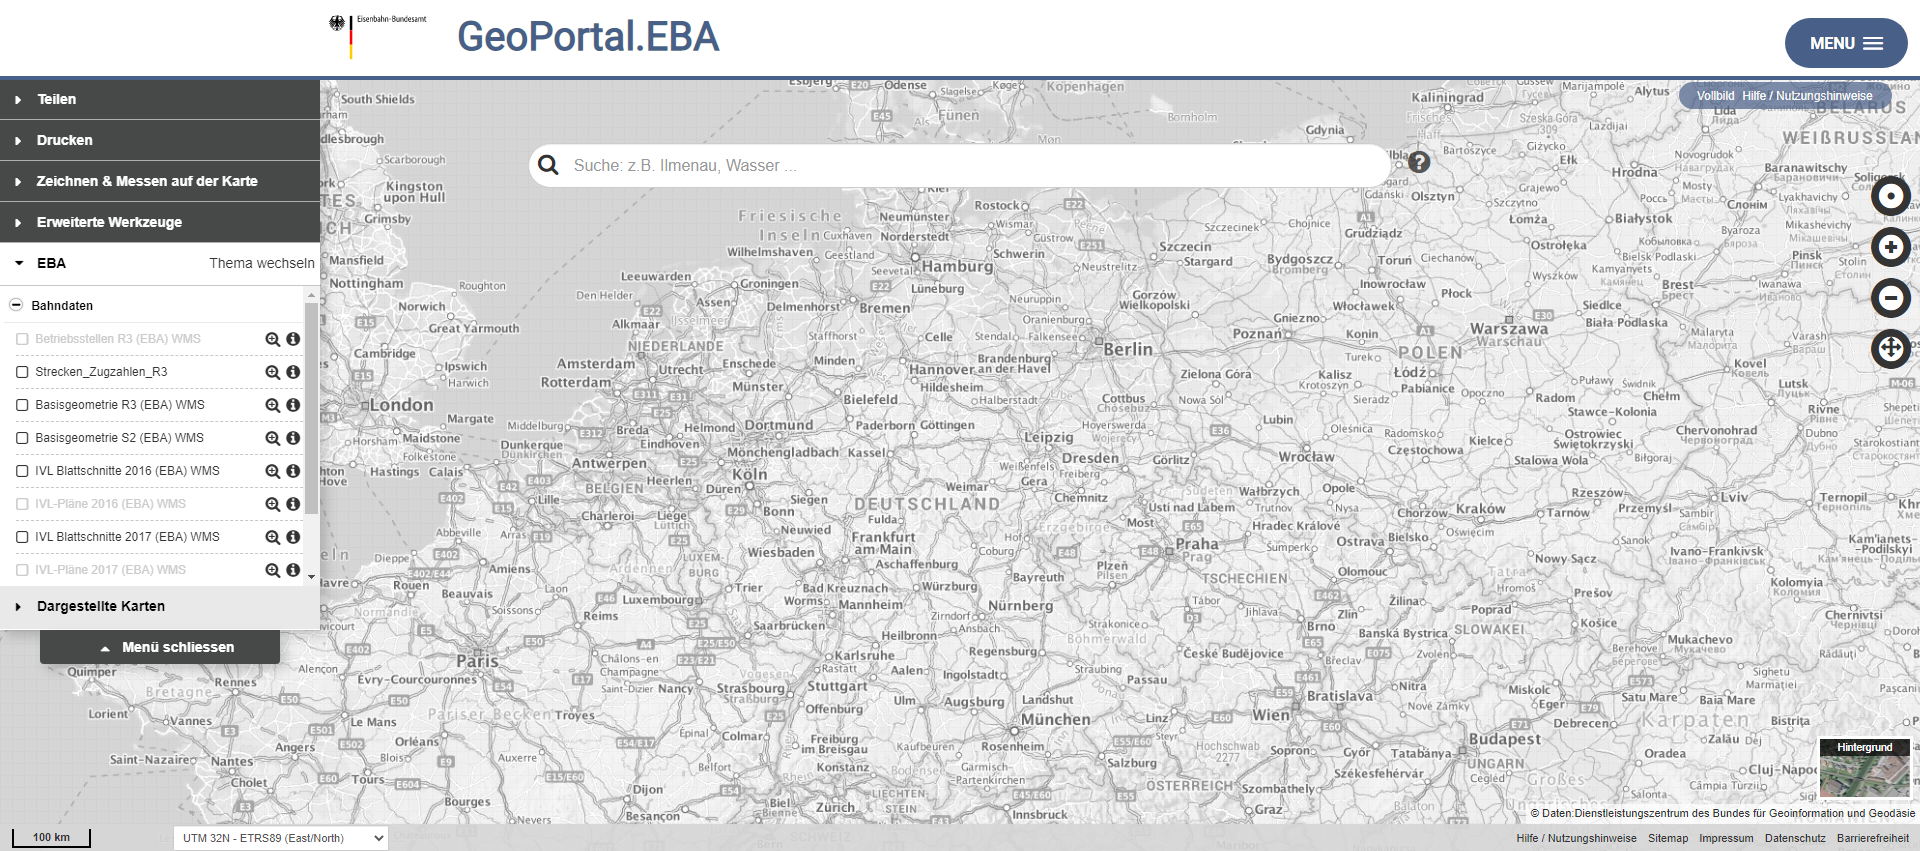 Aktualisiertes Portal-Layout für das GeoPortal.EBA Karte